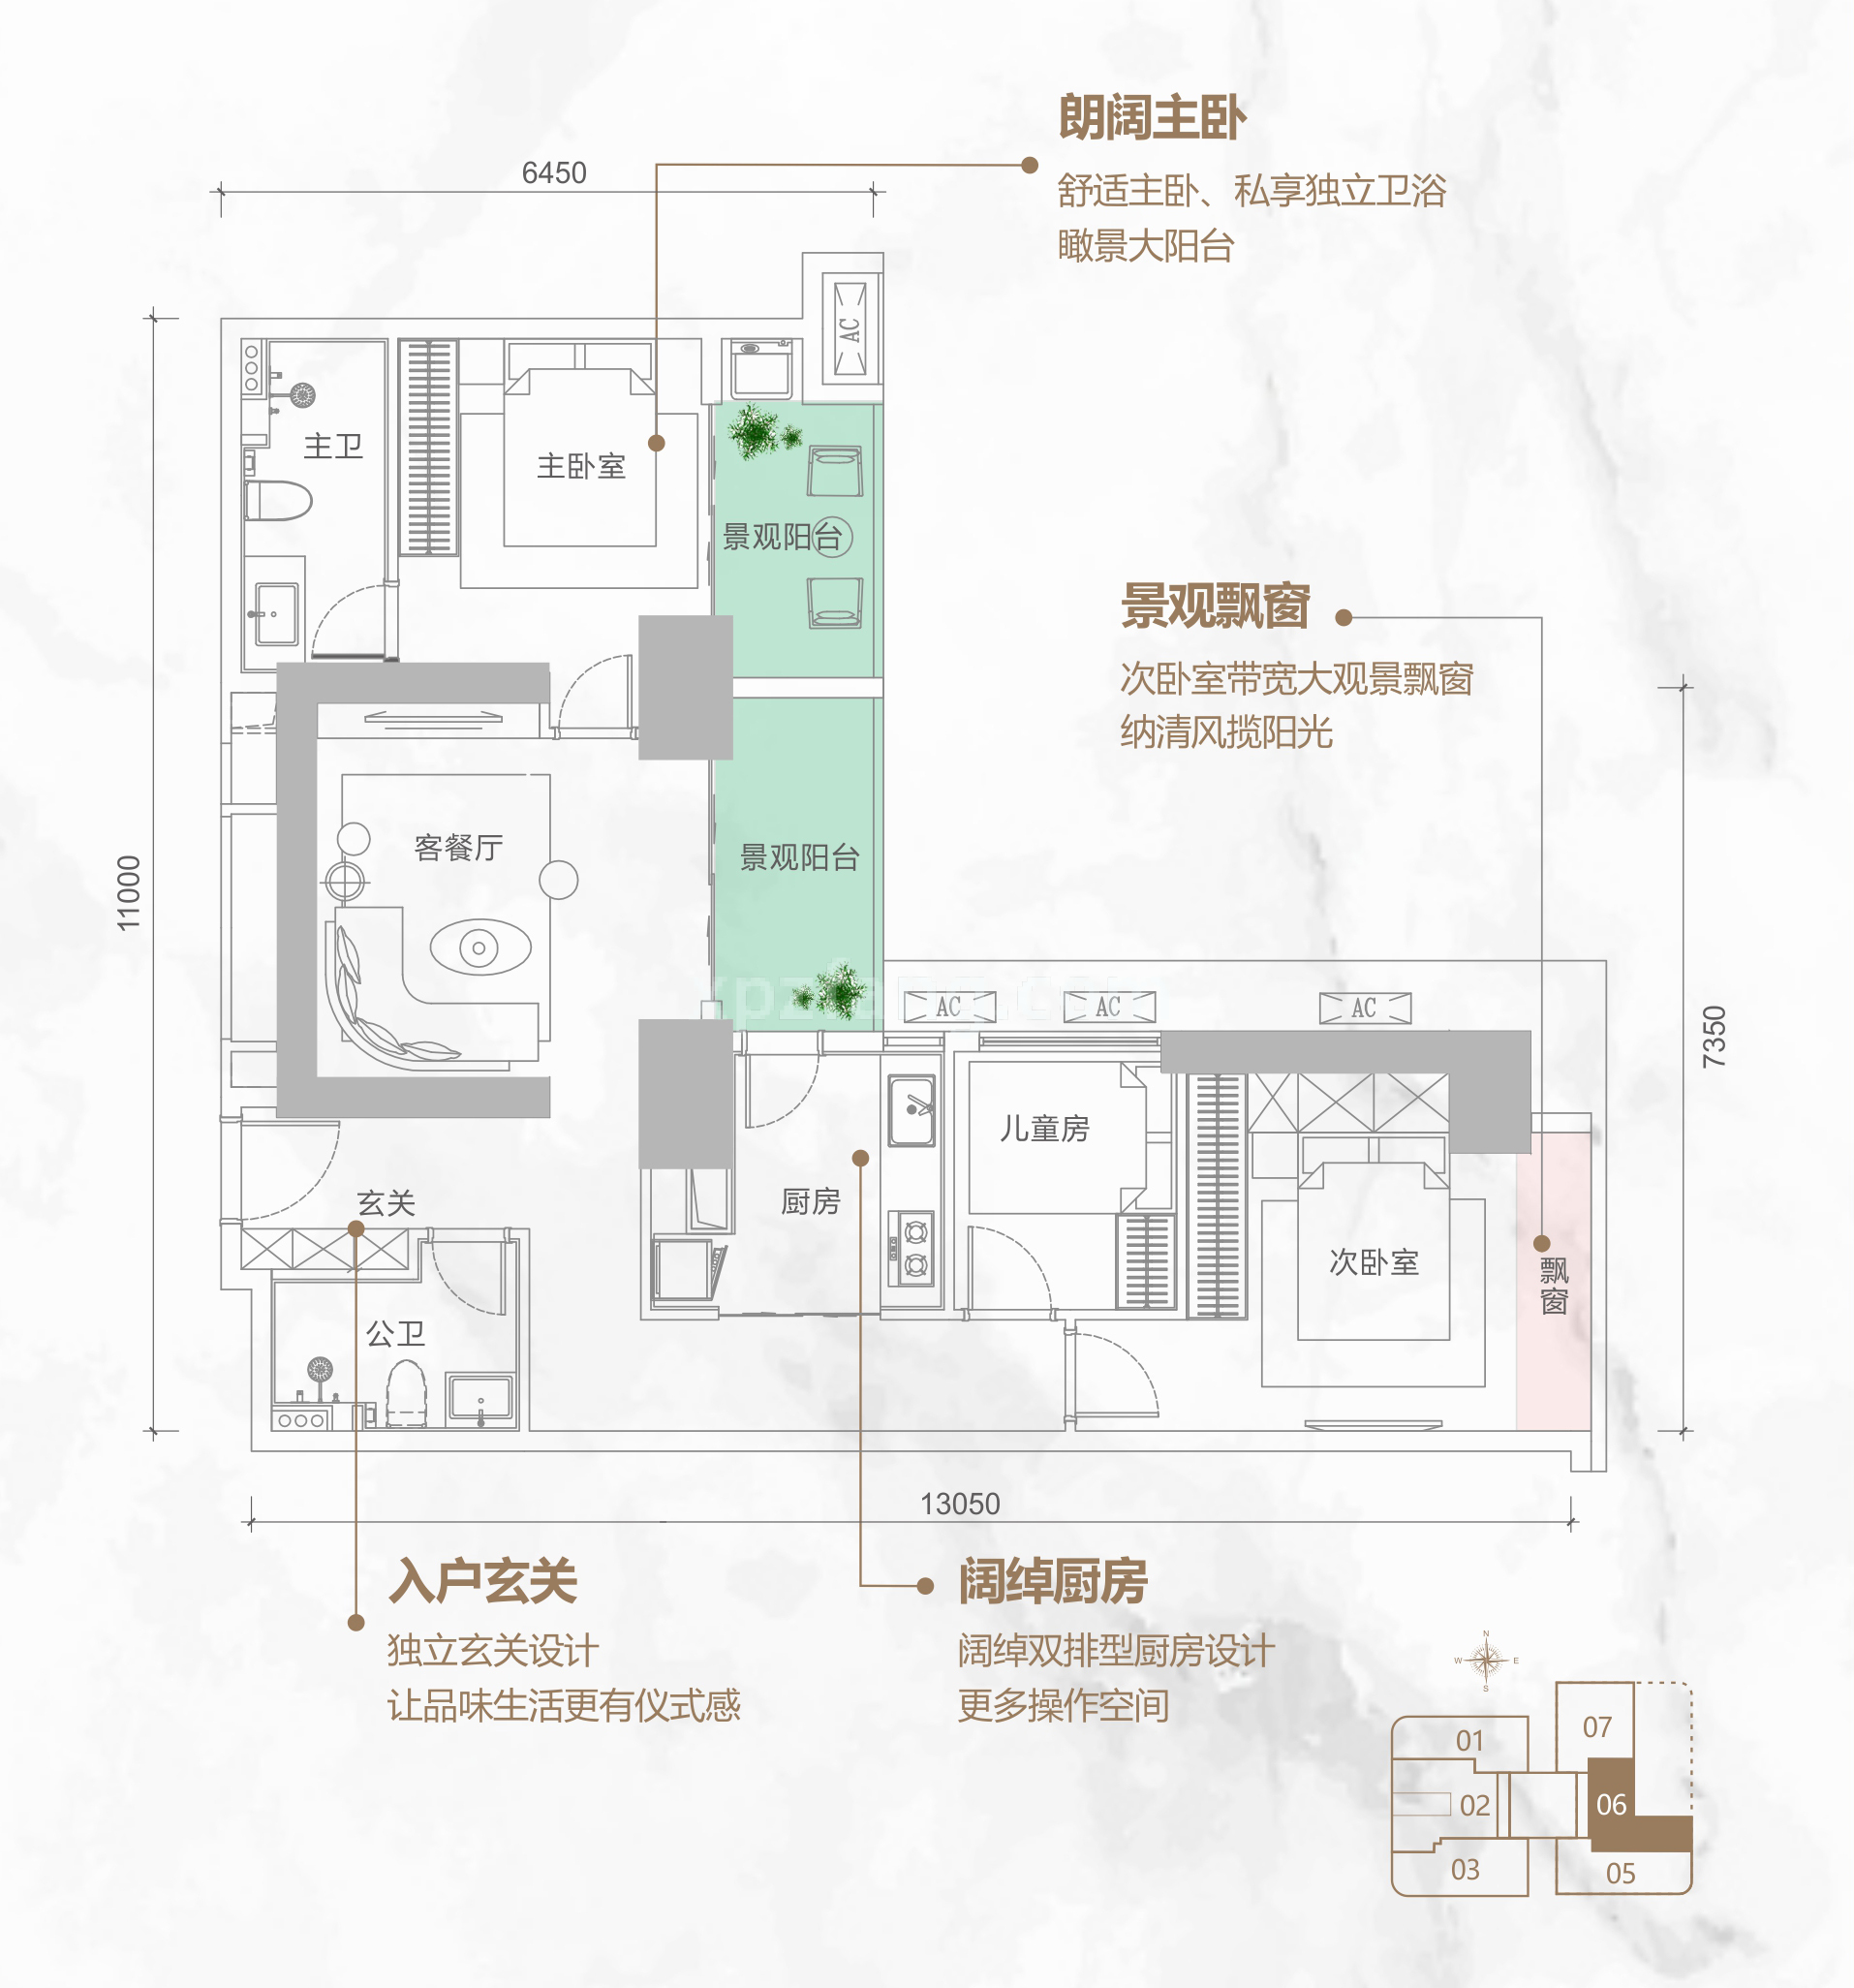 同康江语海 高层 A-06户型 3房1厅2卫 建筑面积104㎡ 